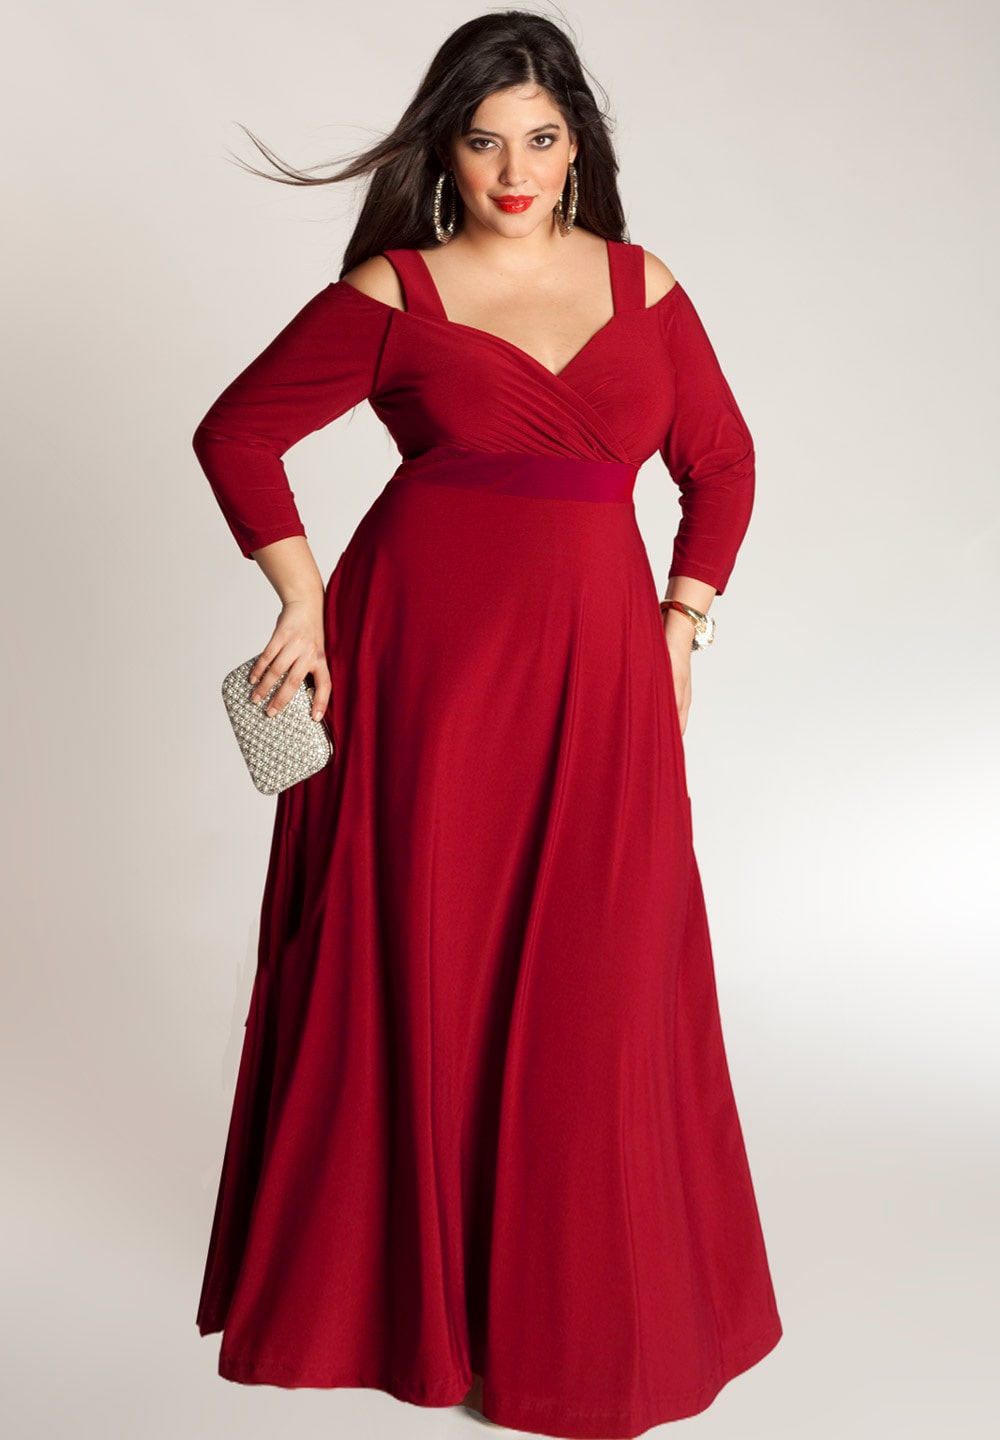 Plus size made to gown | IGIGI.com